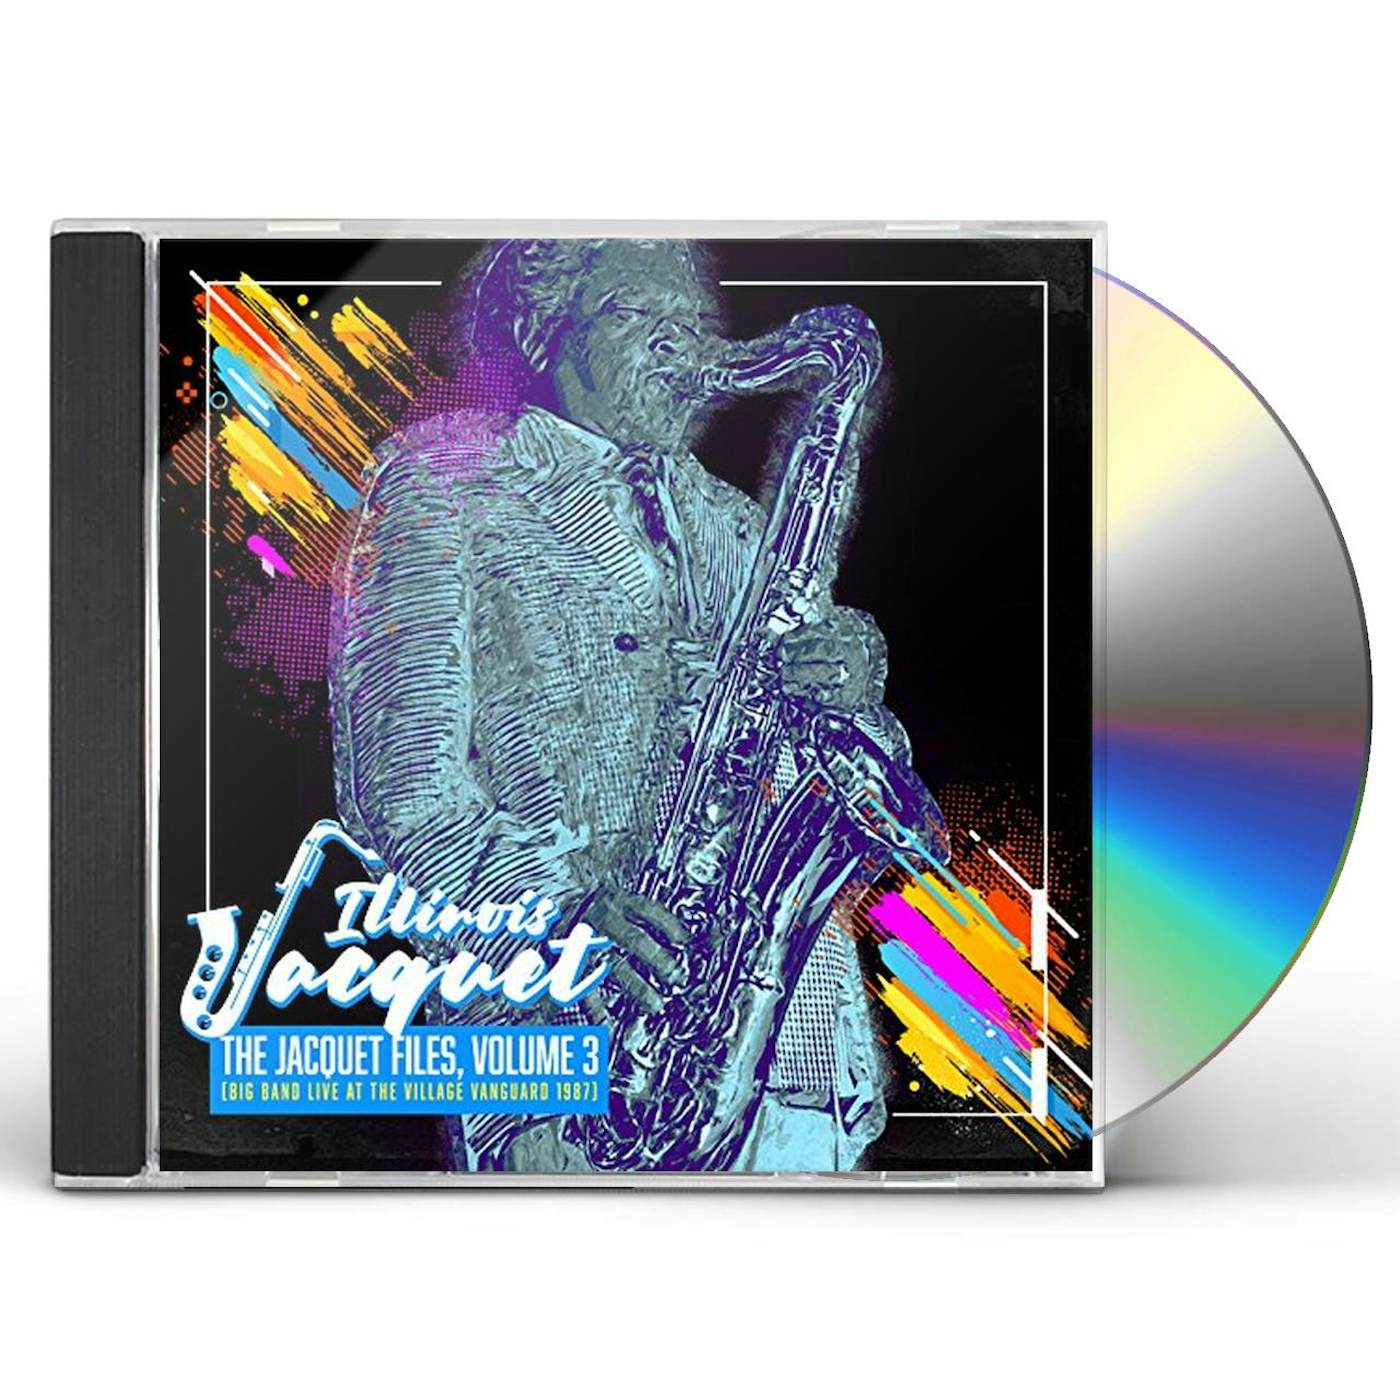 Illinois Jacquet JACQUET FILES VOLUME 3 CD